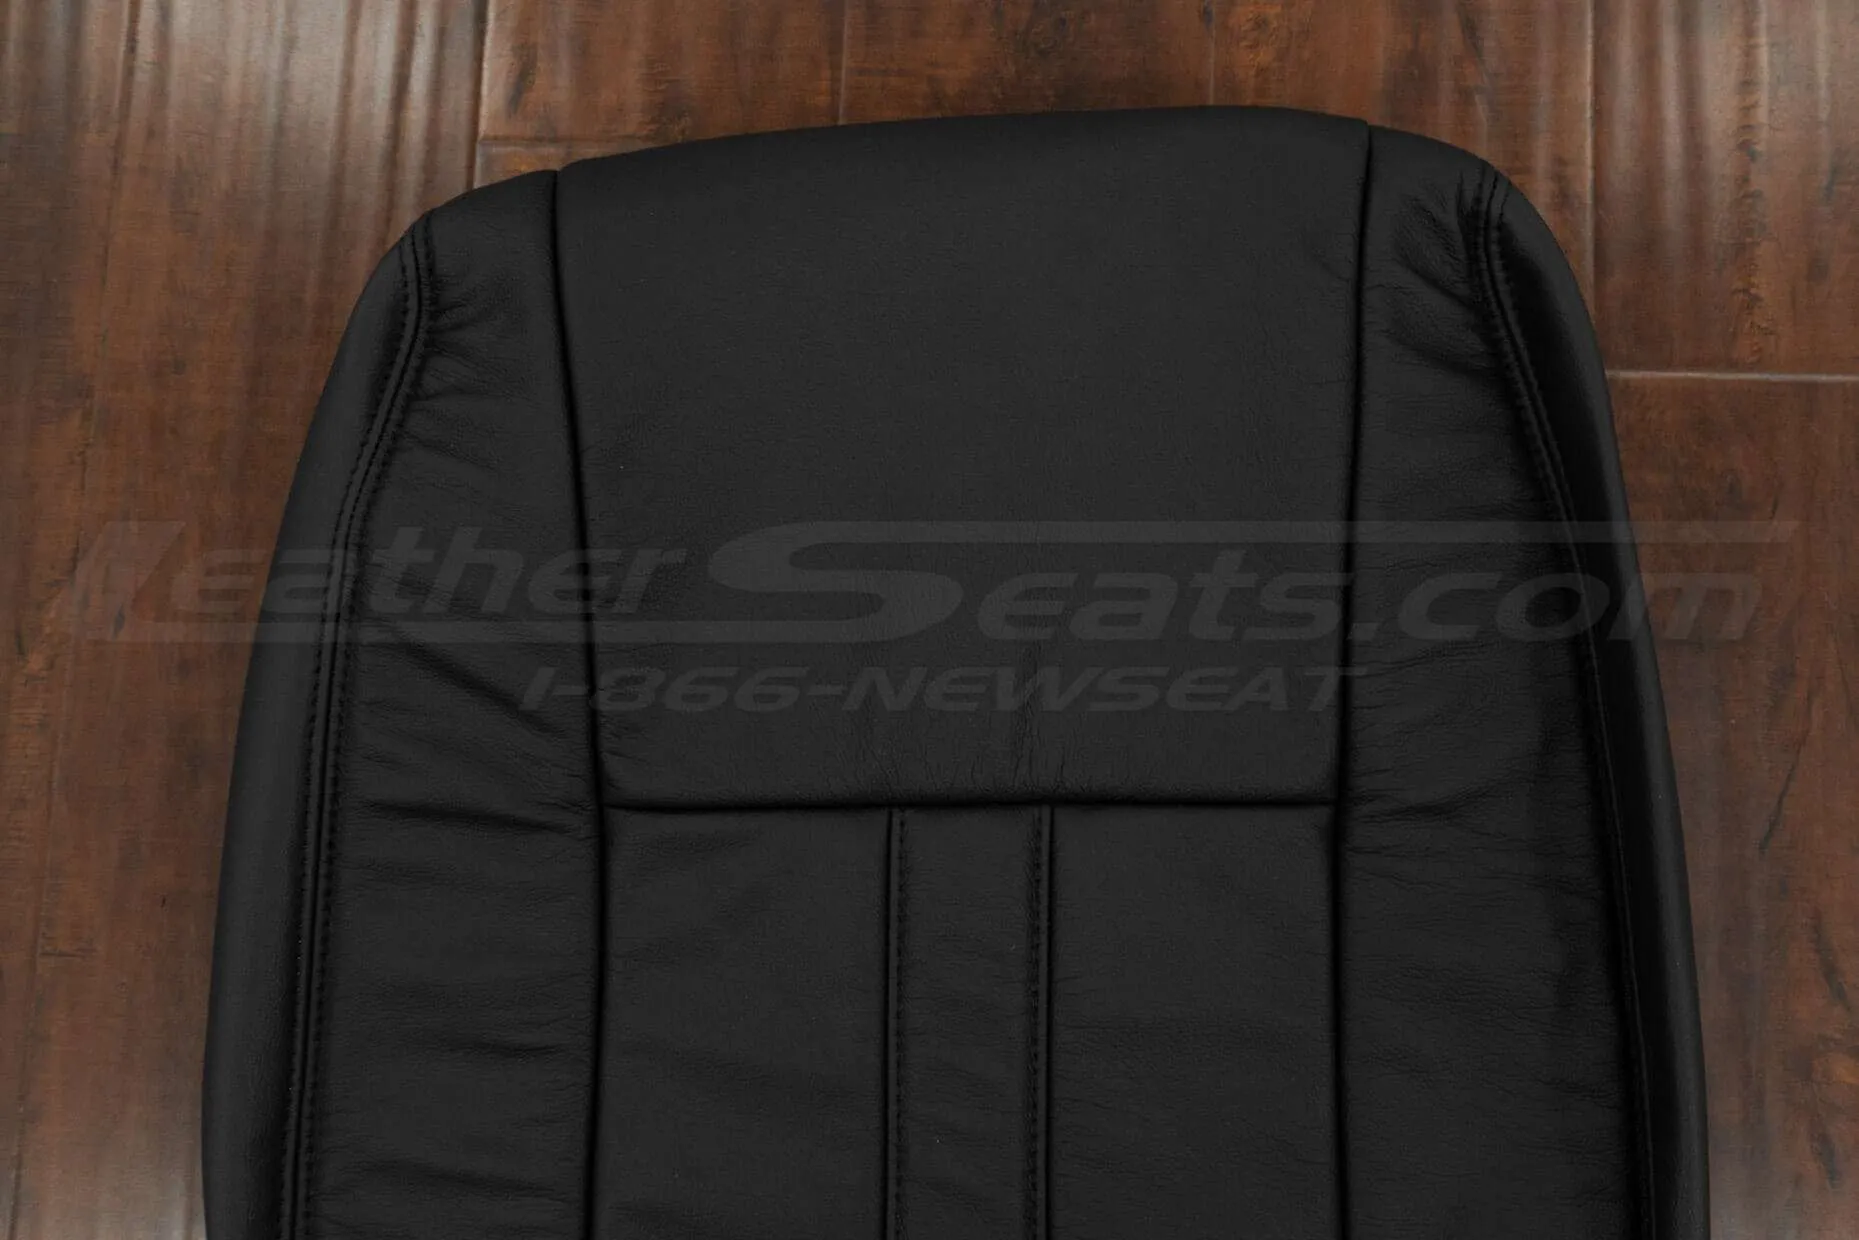 Upper section of Black backrest upholstery